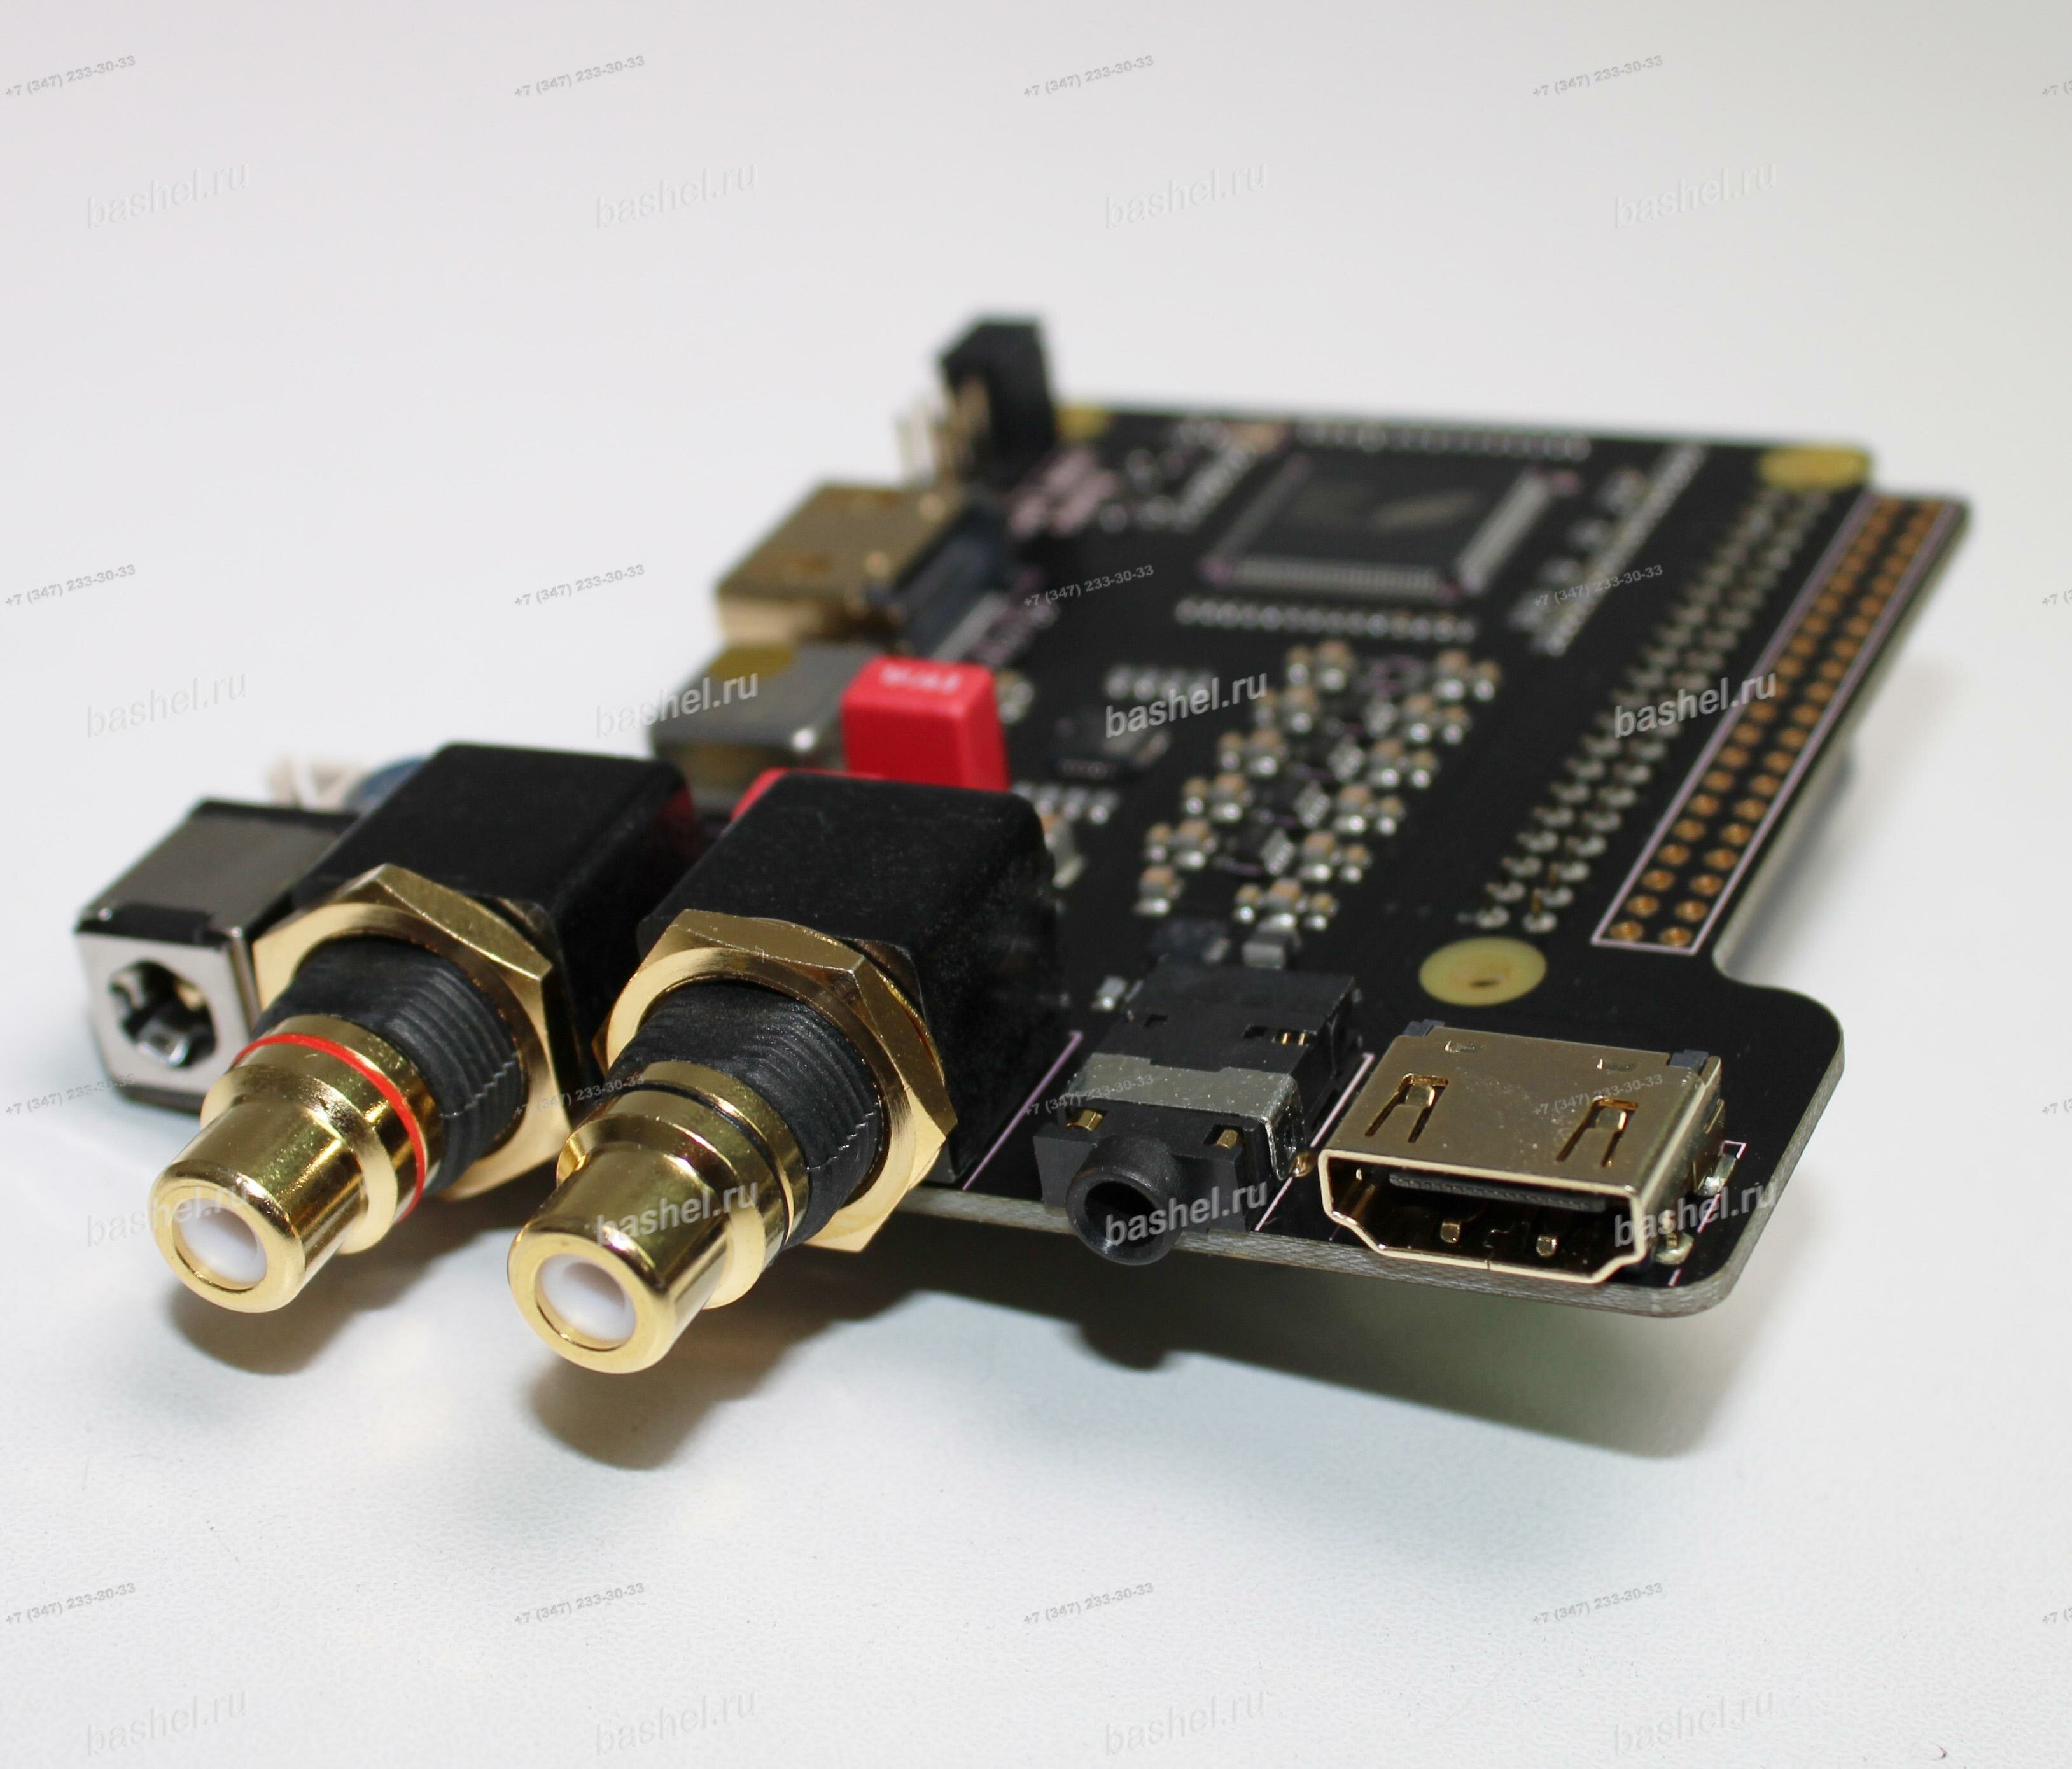 Модуль высококачественного 2х-канального аудио HiFi ЦАП SupTronics X4000 (Питание внеш.: 5В, SPDIF, RCA, jack 3.5, HDMI-